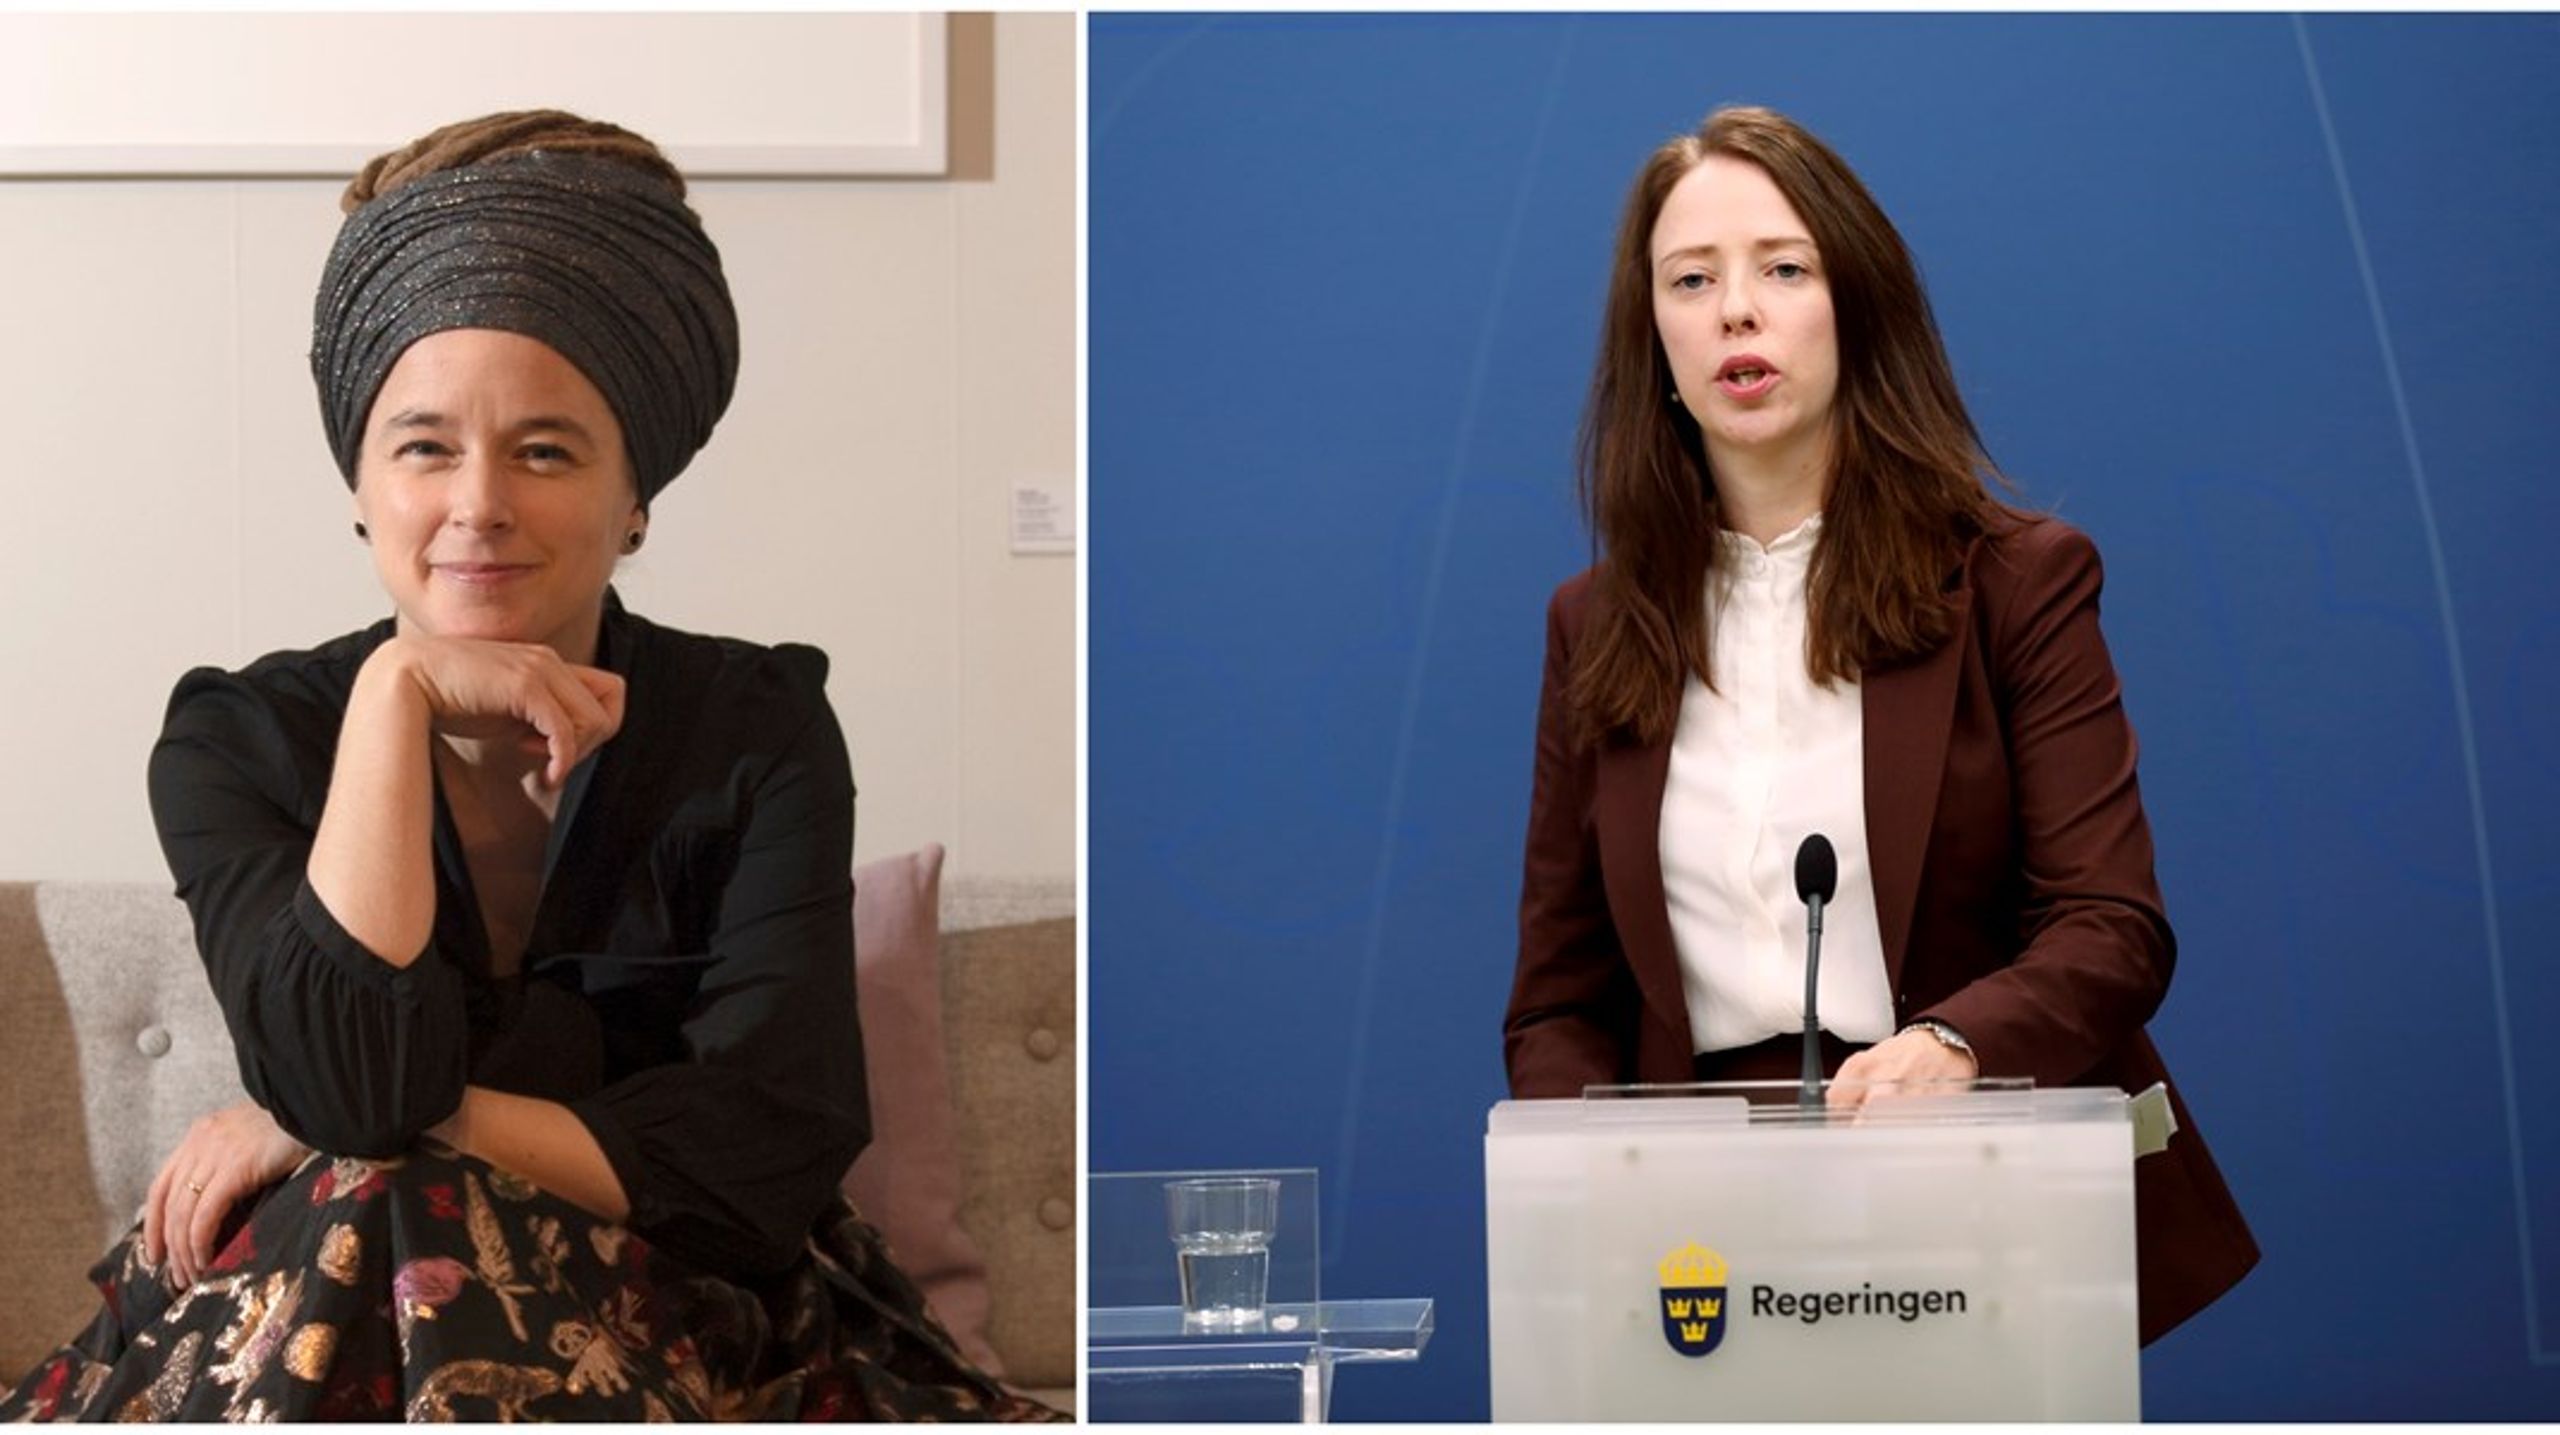 Ex-ministrarna Amanda Lind och Åsa Lindhagen gör comeback.